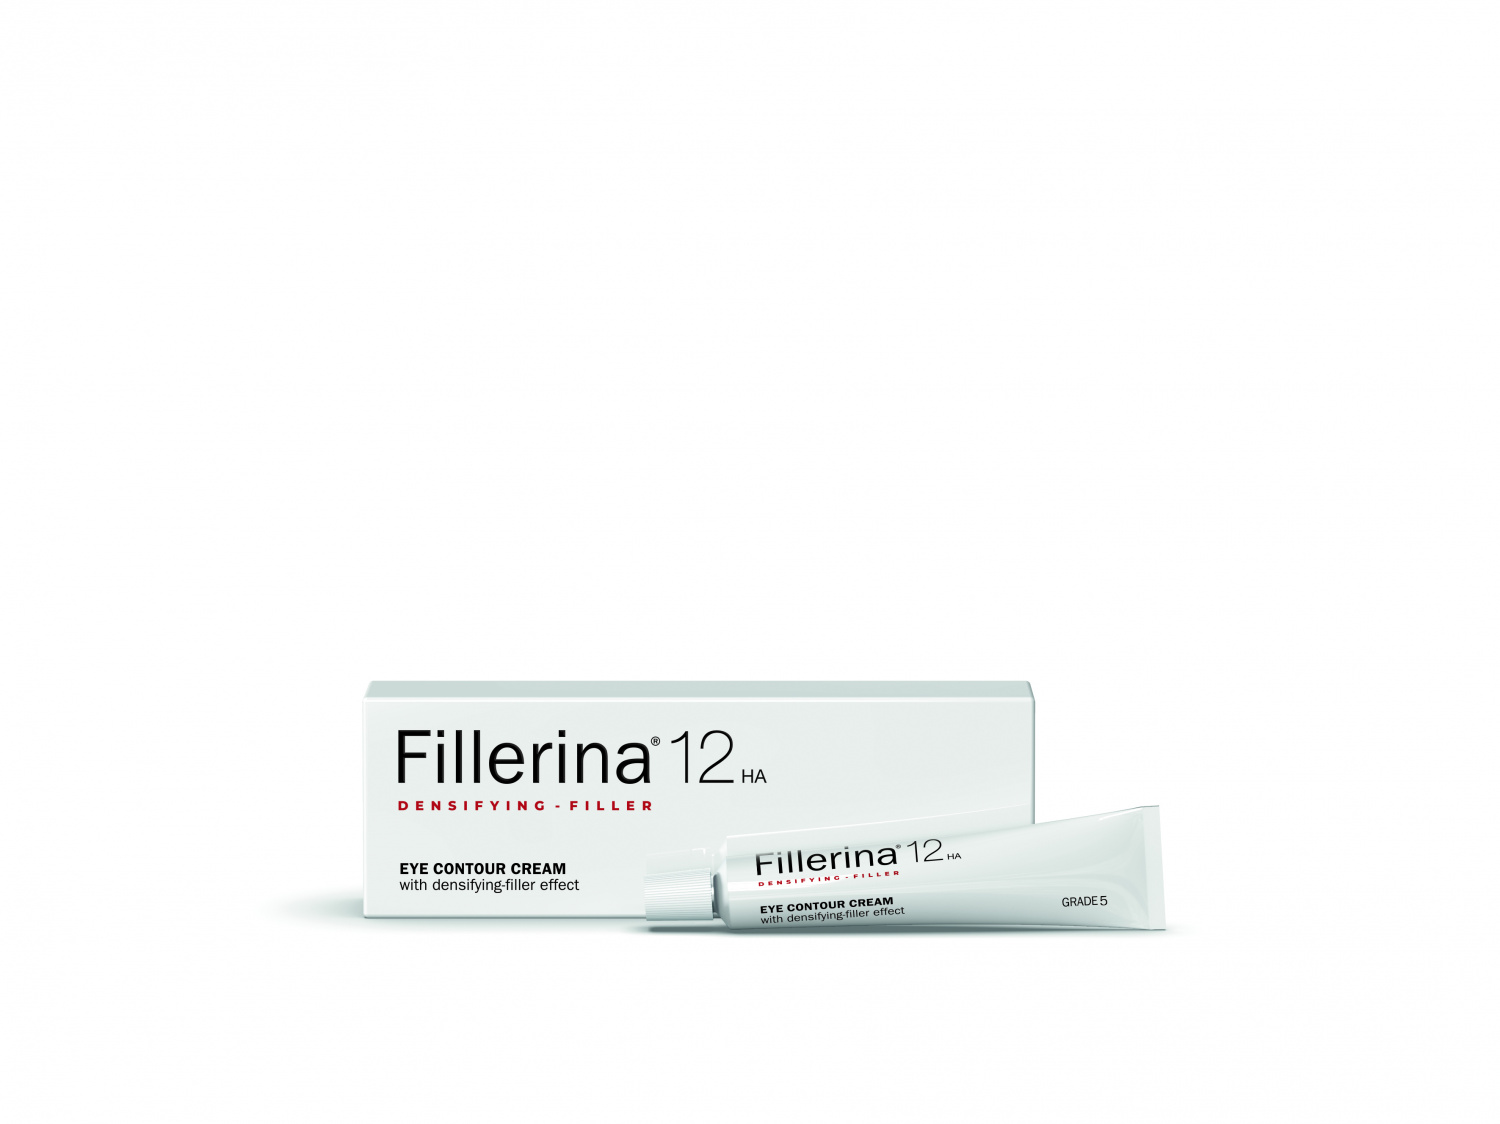 Fillerina 12HA Densifying-Filler Eye Contour Cream Grade 5 15ml - интернет-магазин профессиональной косметики Spadream, изображение 37566